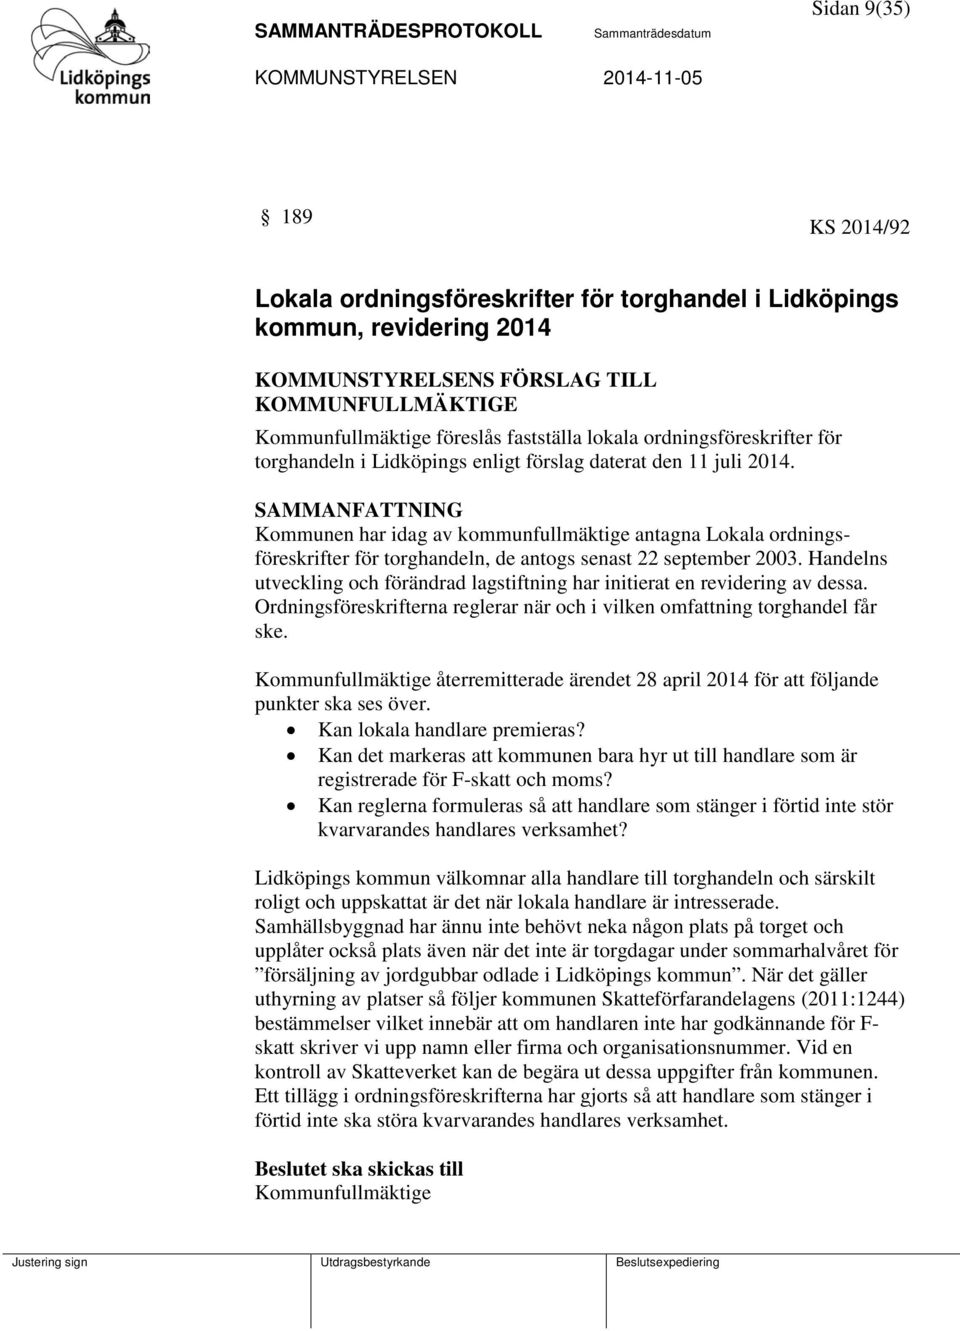 Kommunen har idag av kommunfullmäktige antagna Lokala ordningsföreskrifter för torghandeln, de antogs senast 22 september 2003.